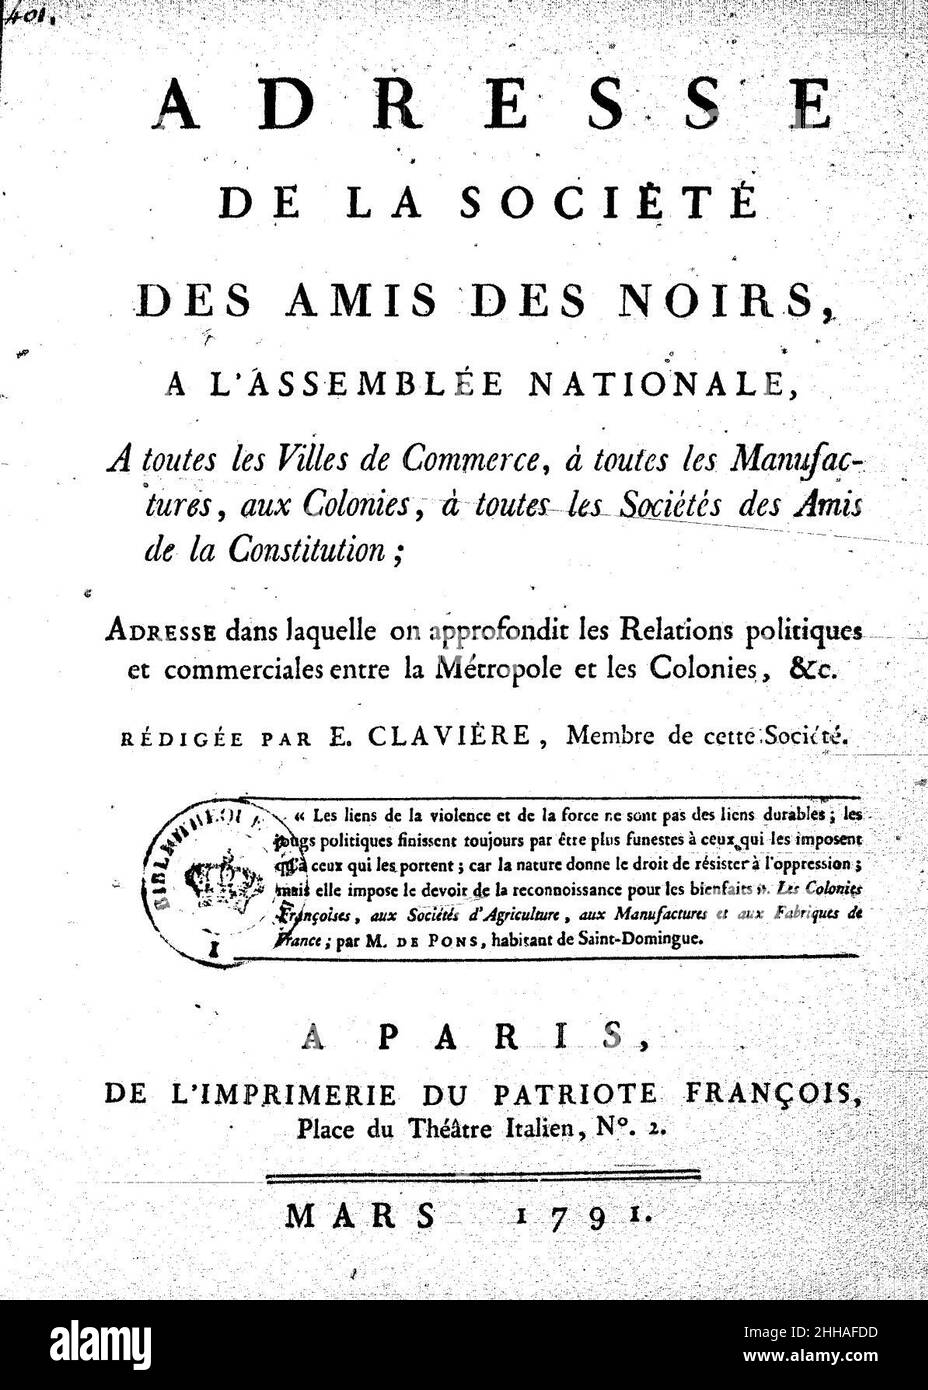 Société des amis des noirs mars 1791. Stock Photo